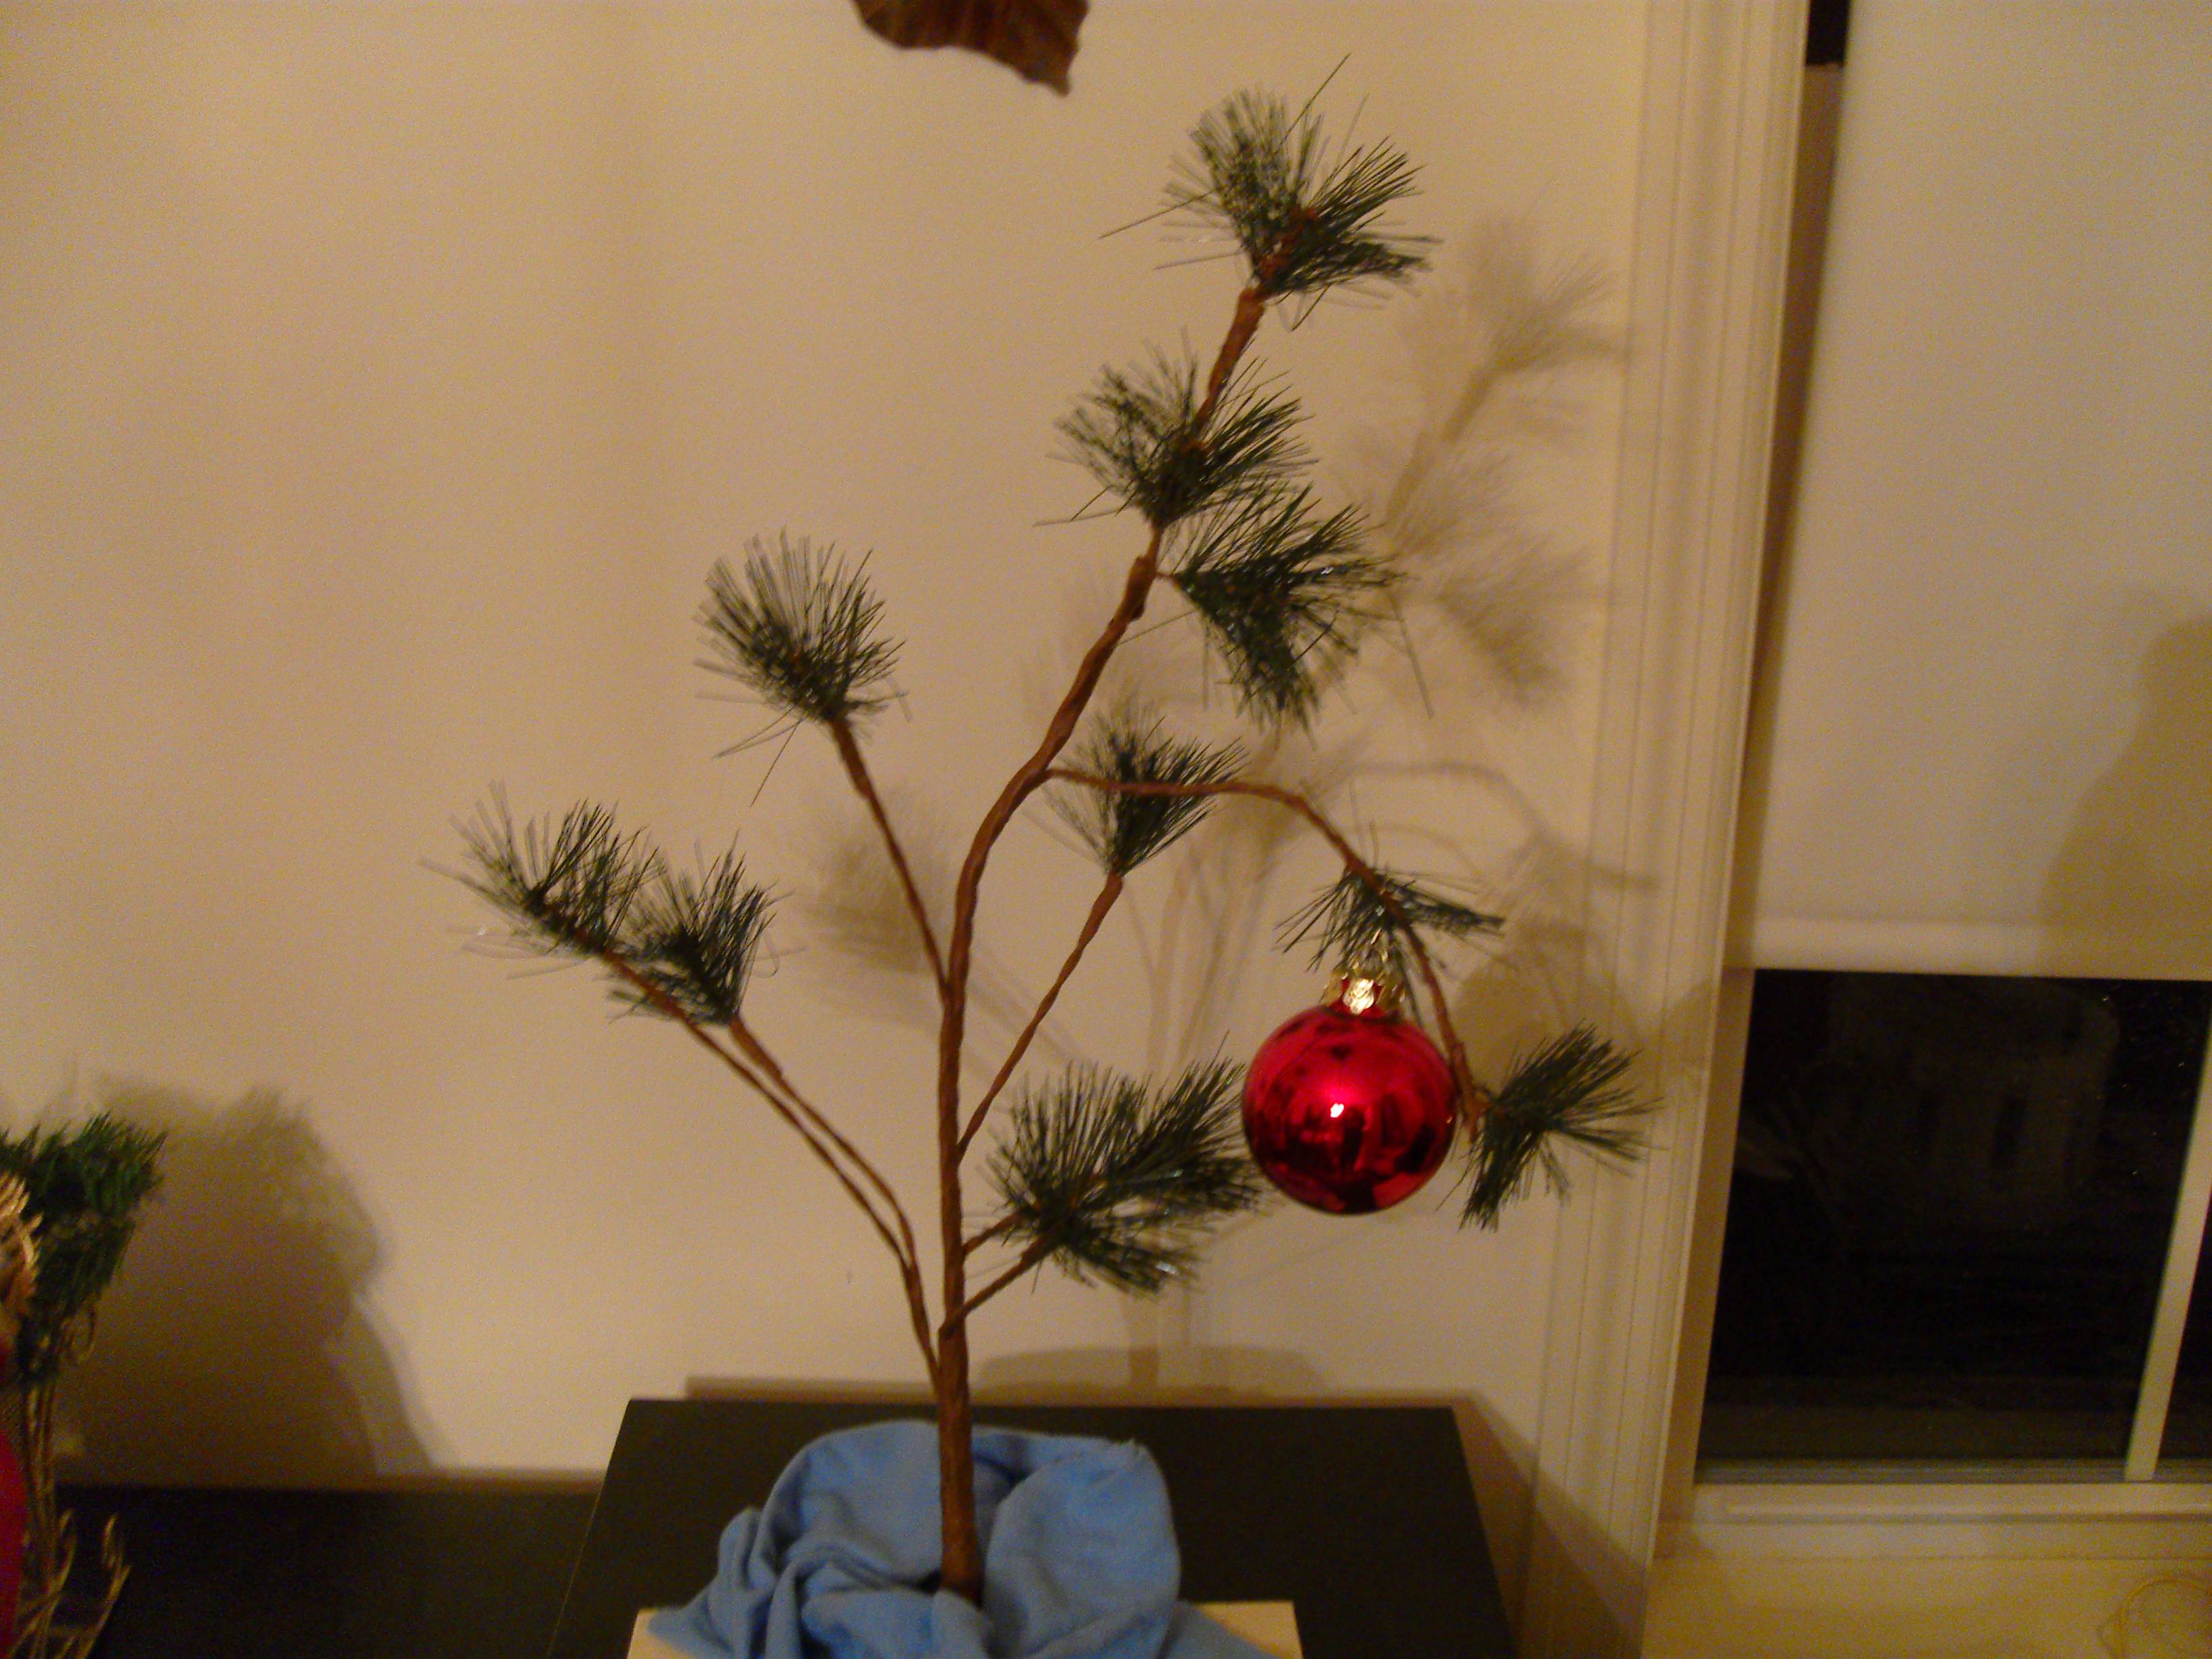 Xmas Stuff For > Real Charlie Brown Christmas Tree